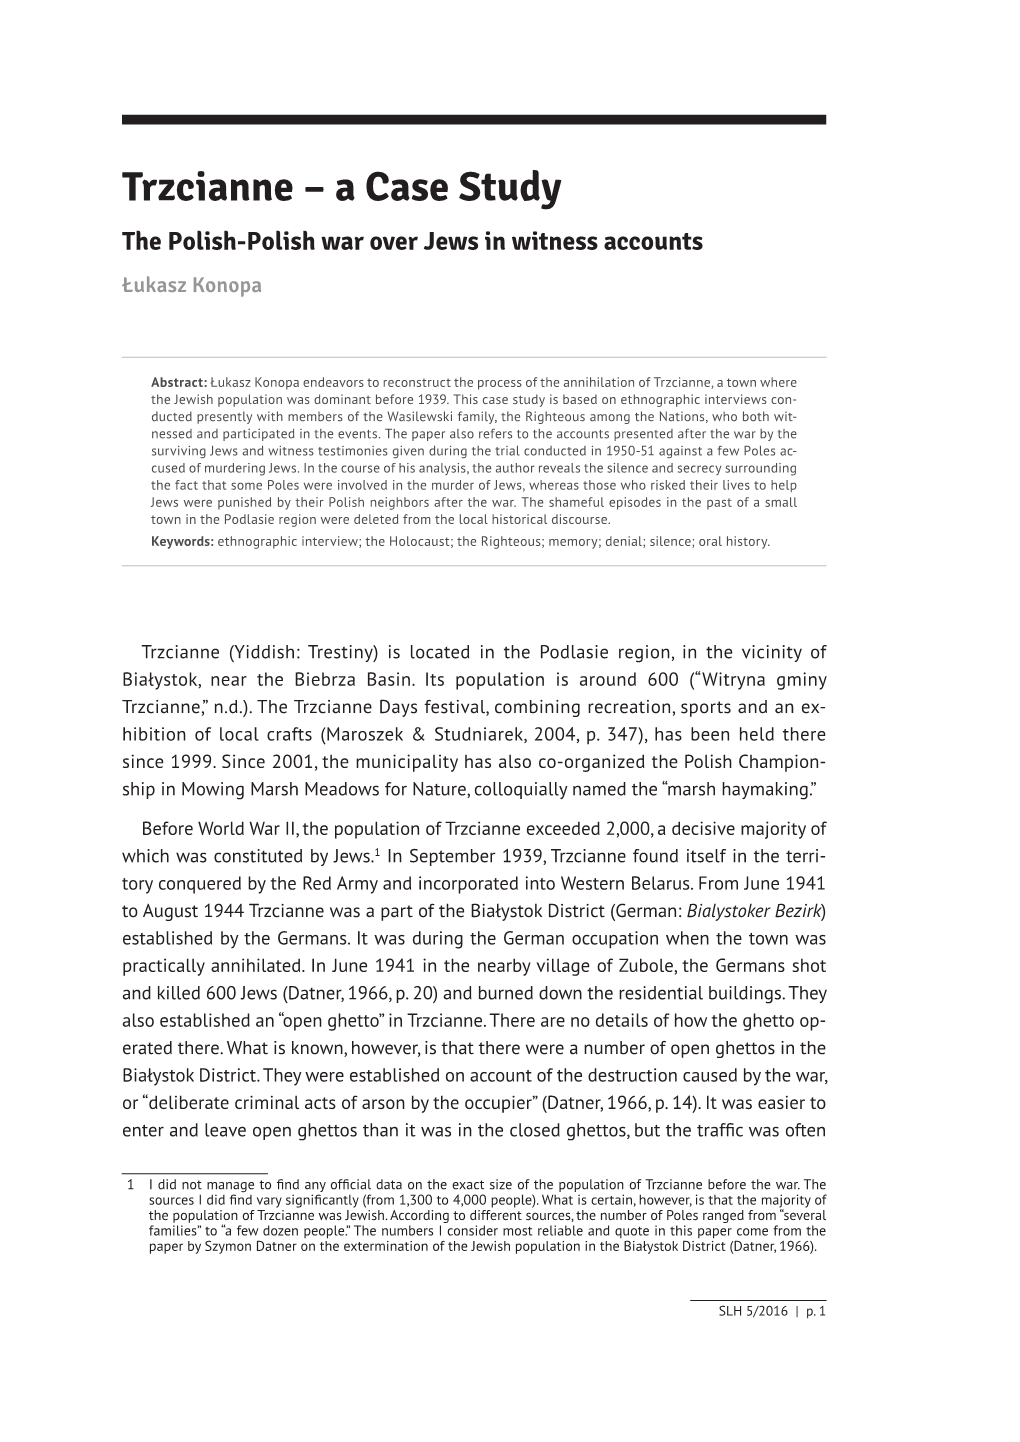 Trzcianne – a Case Study the Polish-Polish War Over Jews in Witness Accounts Łukasz Konopa